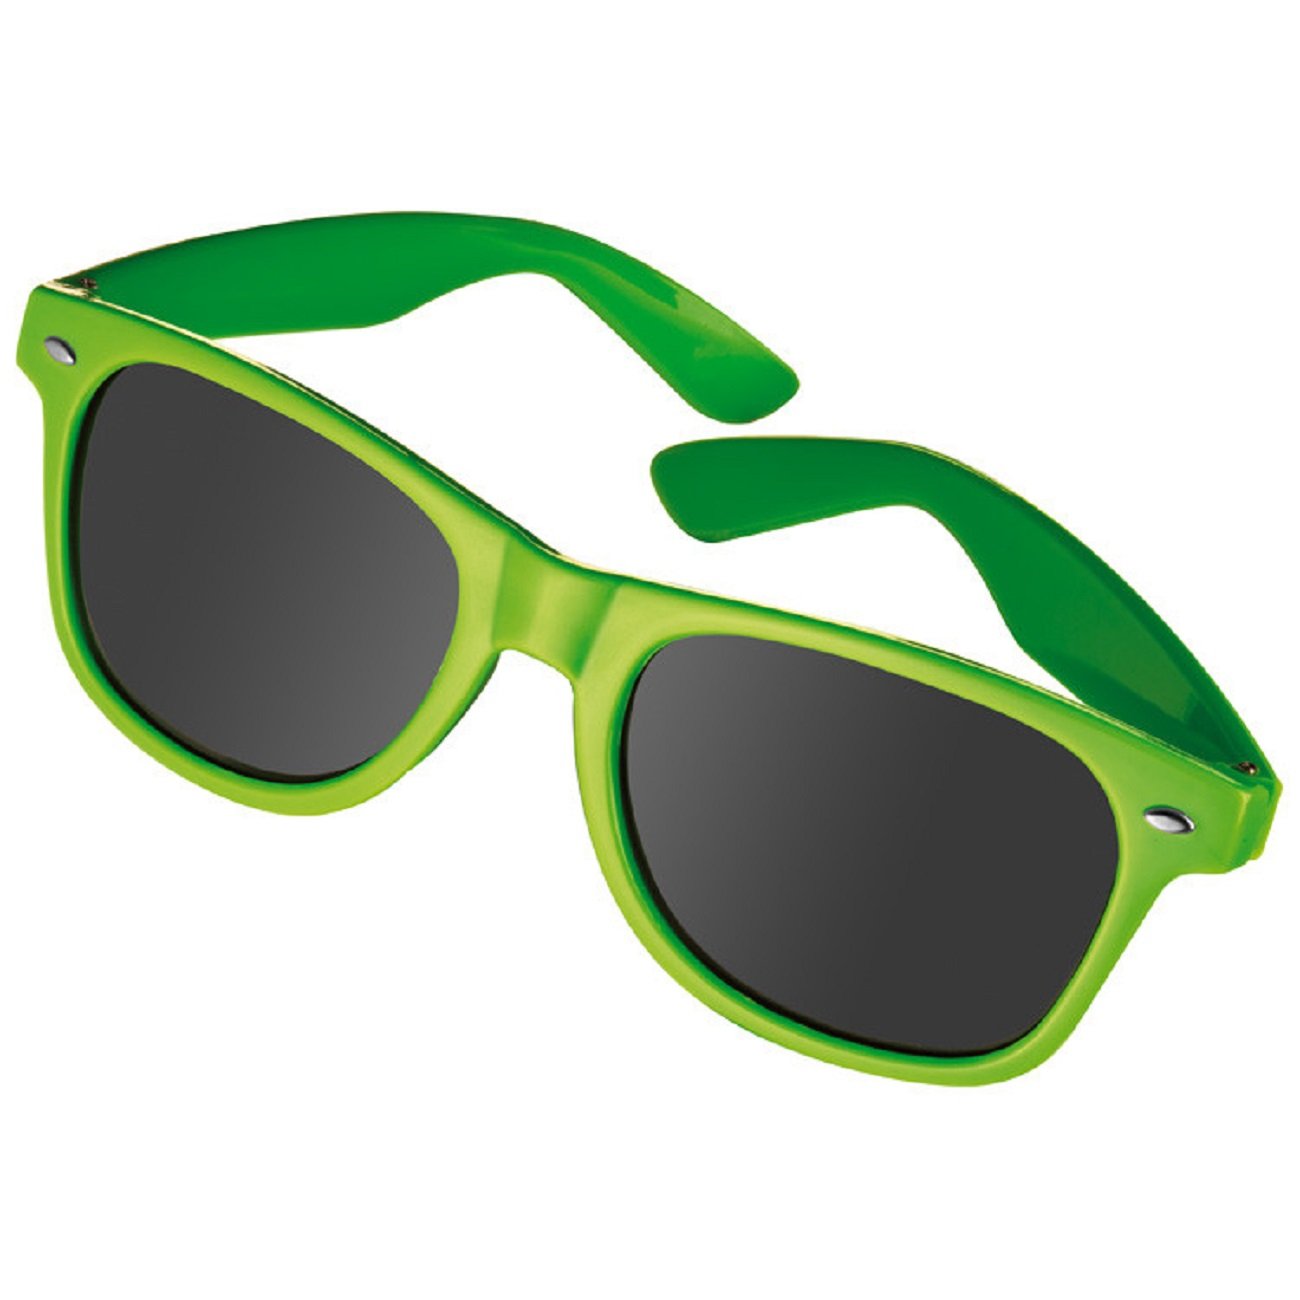 NO BRAND 10 Stück Sonnenbrille im Nerdlook - UV 400 zertifiziert - Hochwertiger Kunststoffrahmen (10 Stück apfelgrün)